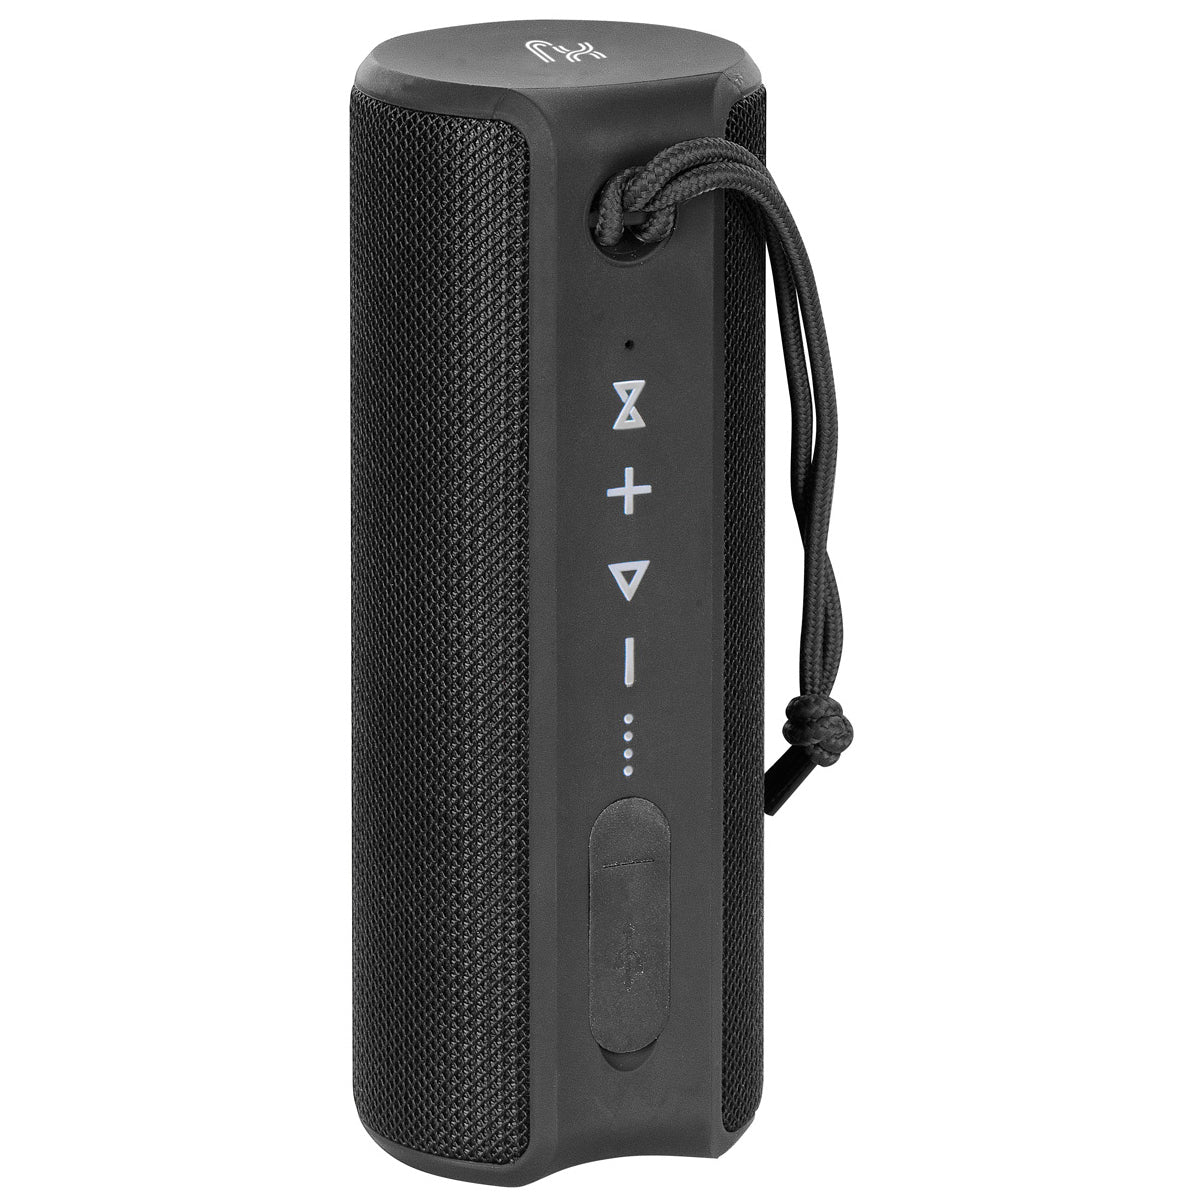 X-JUMP XJ-90 Cassa Bluetooth portatile amplificata 24W, Altoparlante TWS, ingresso AUX e MicroSD, microfono incorporato, speaker nero resistente all'acqua waterproof IPX7